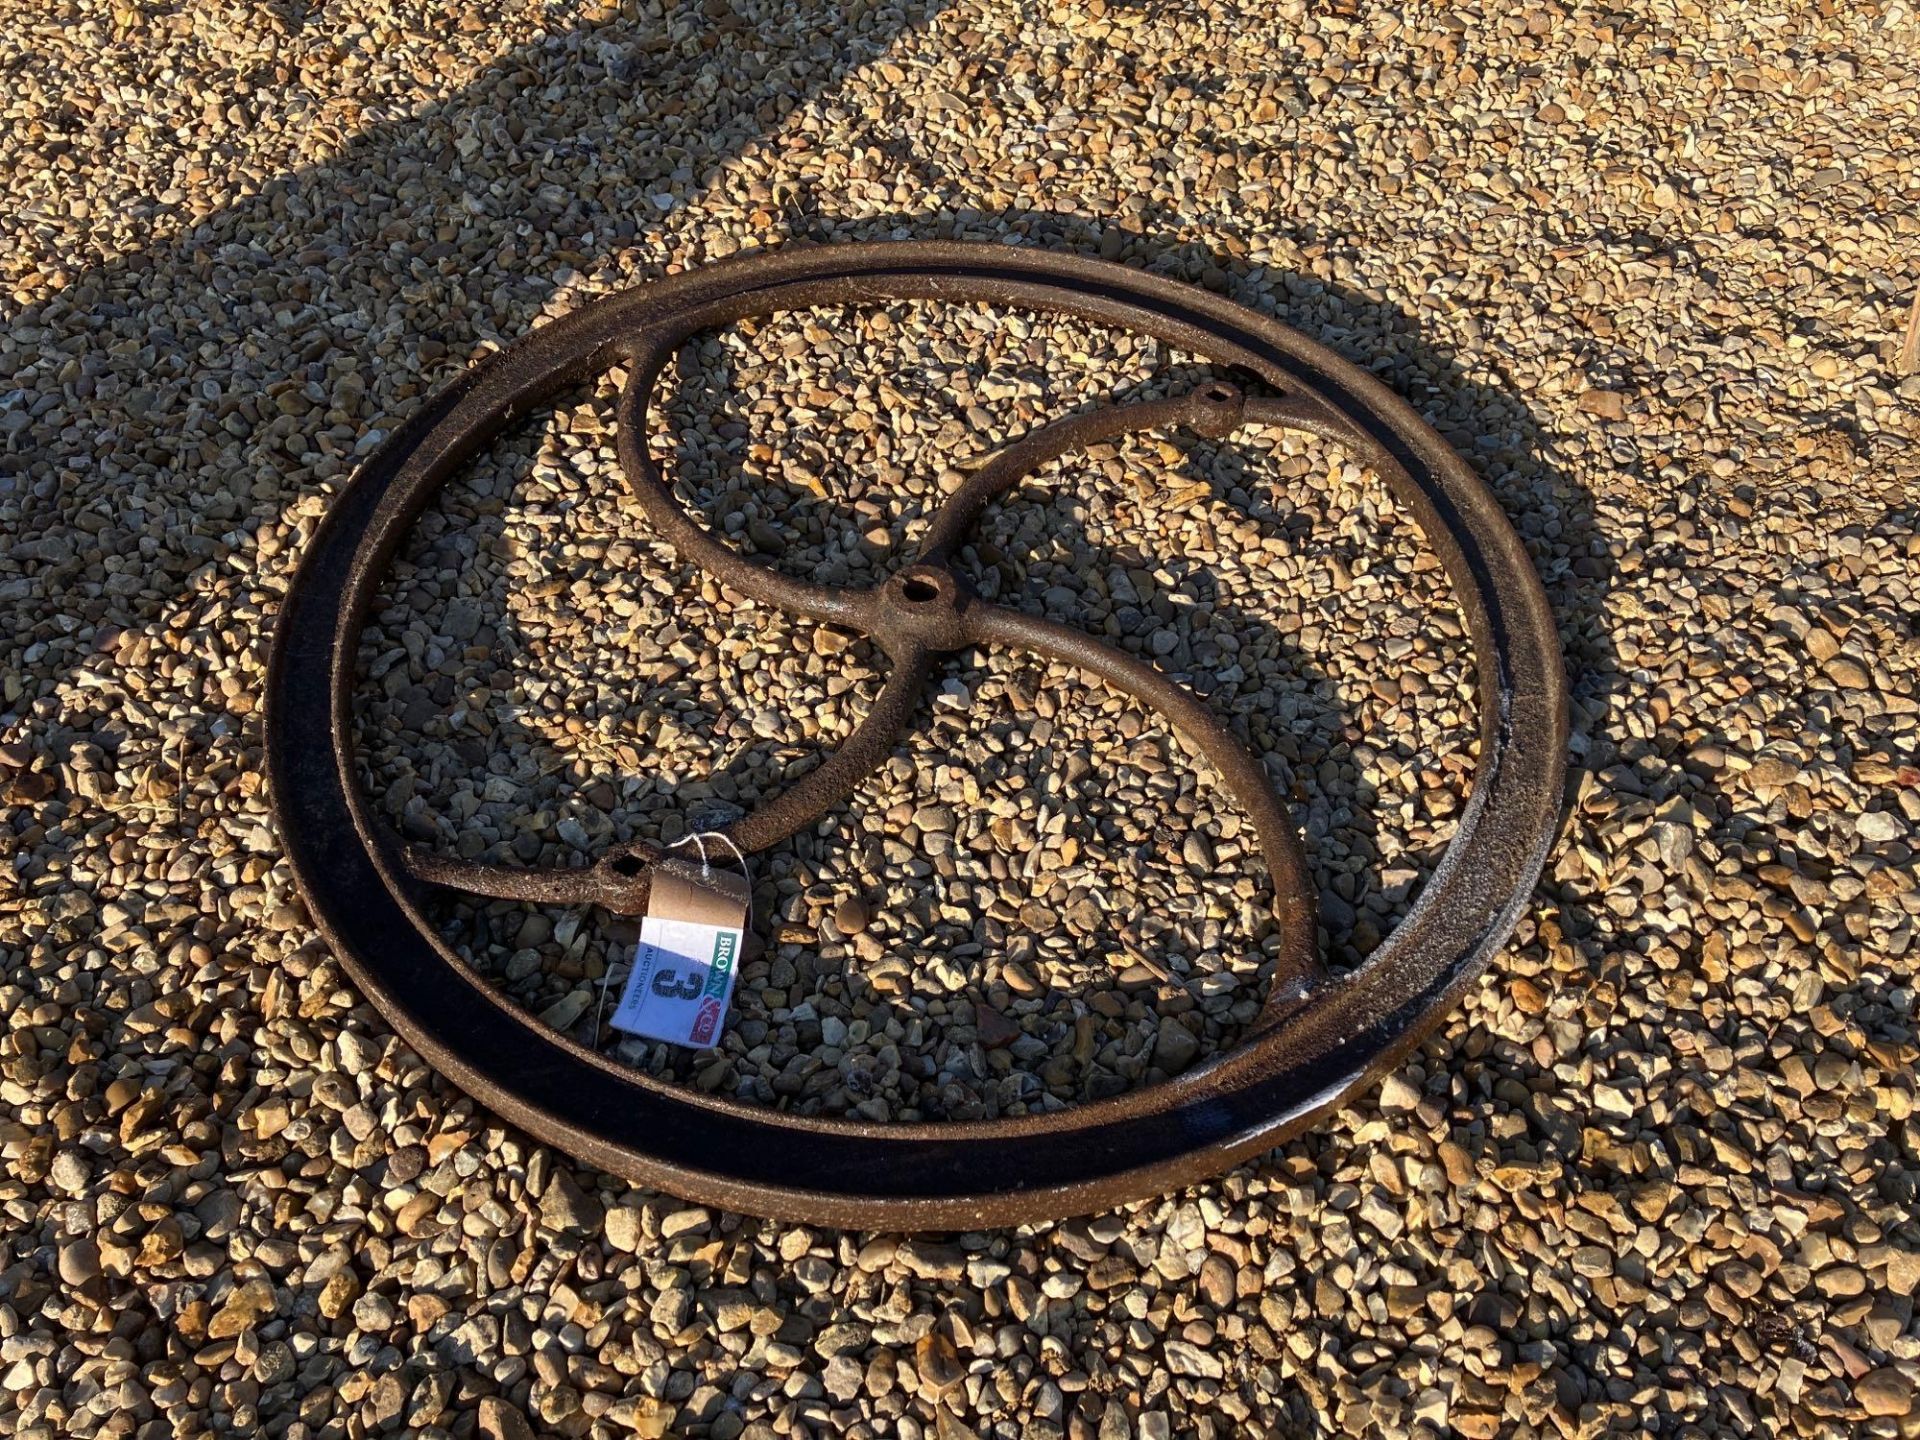 Vintage winding wheel